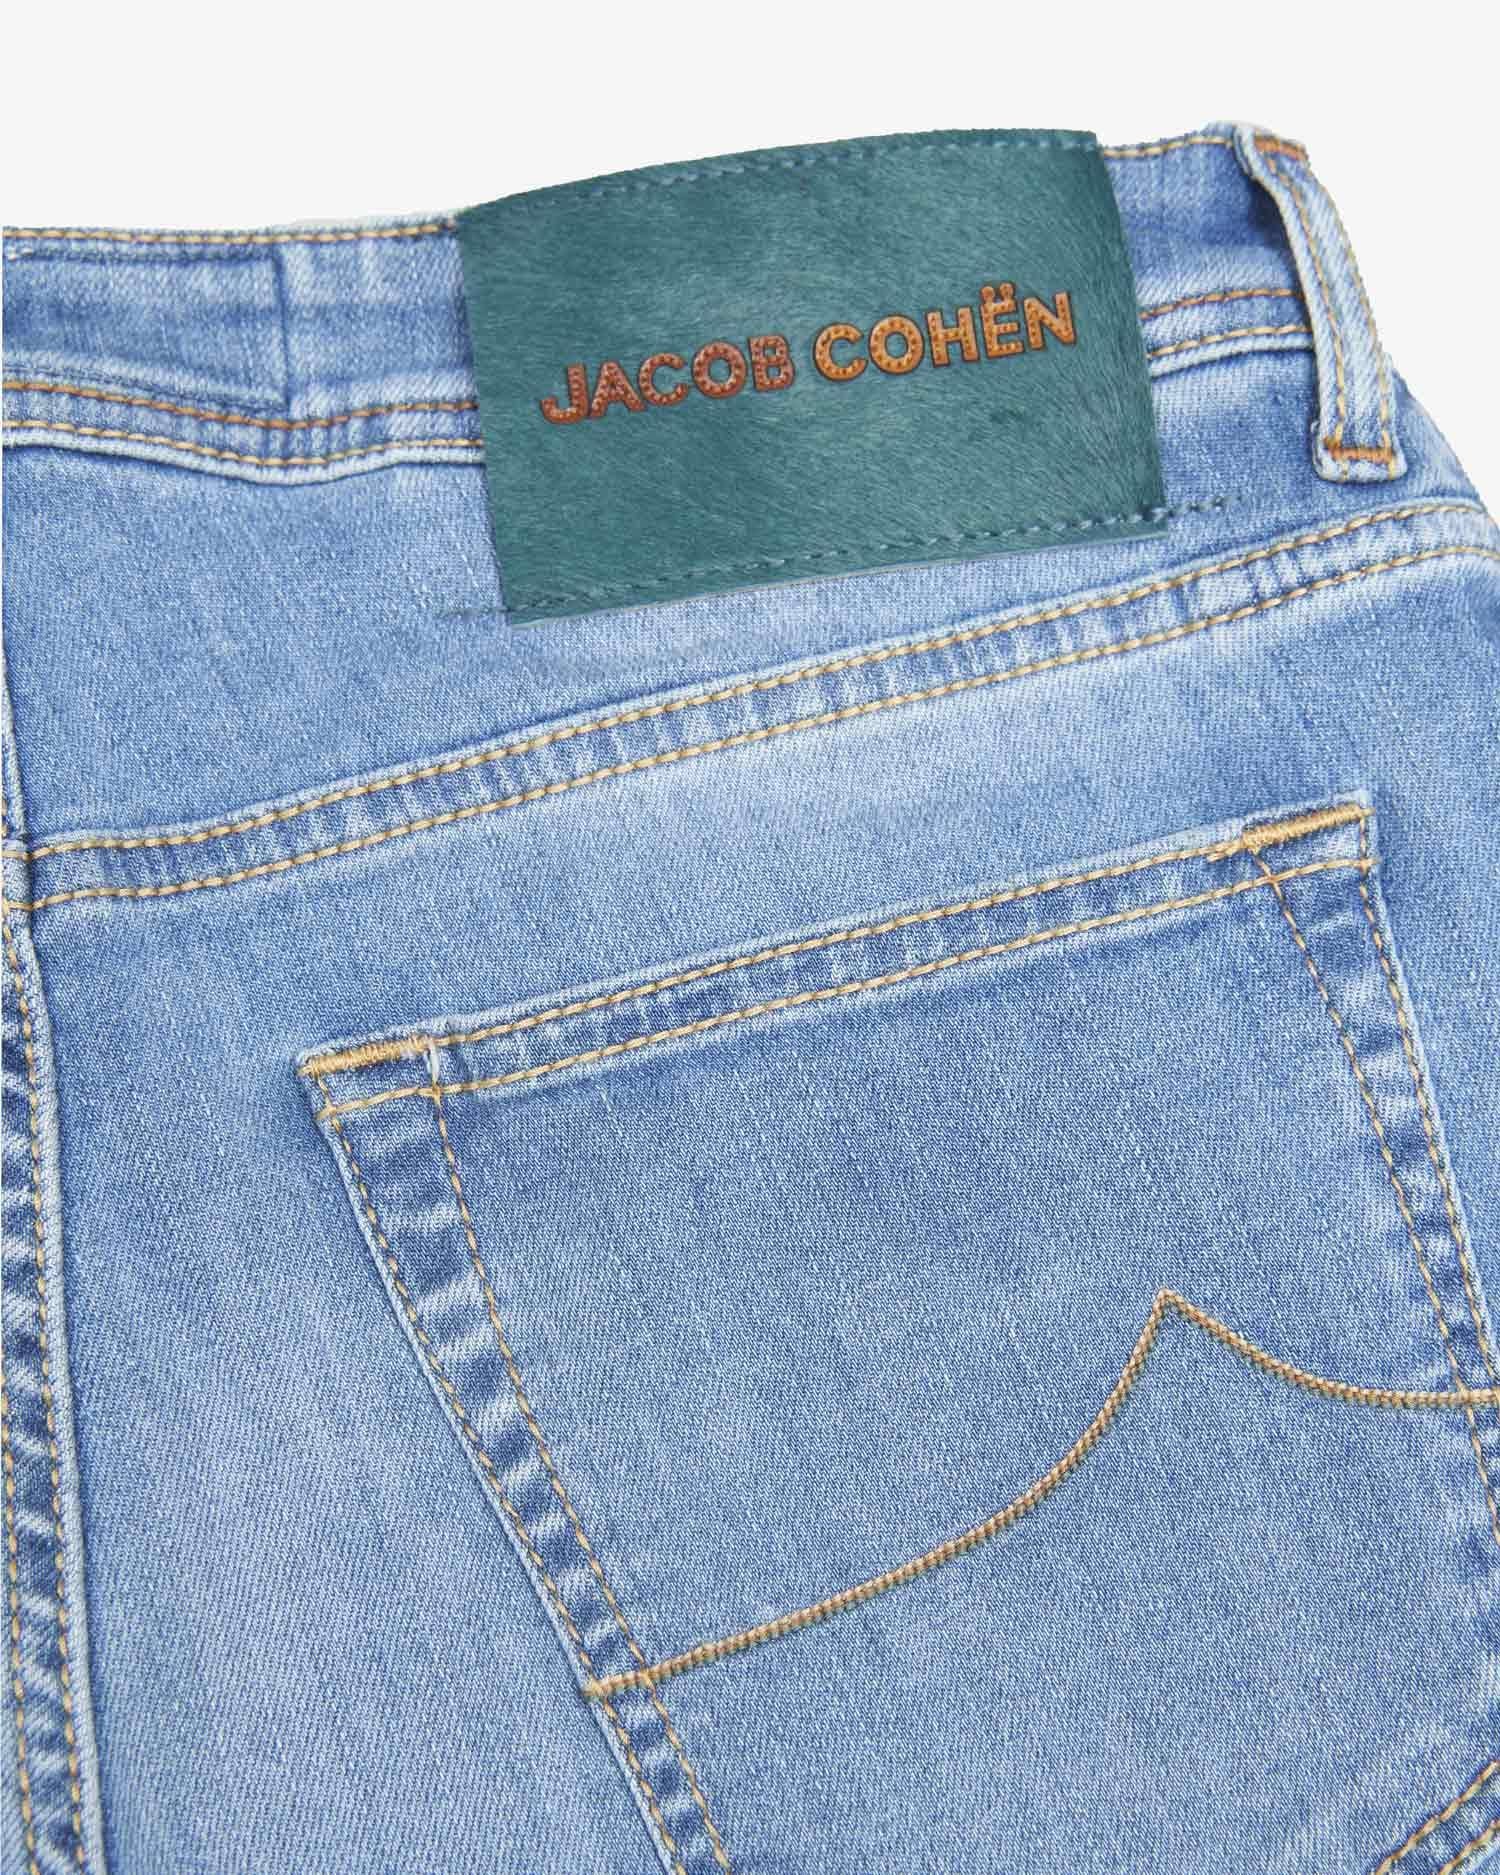 Bard Lyse Blå Jeans-JACOB COHEN-www.gunnaroye.no